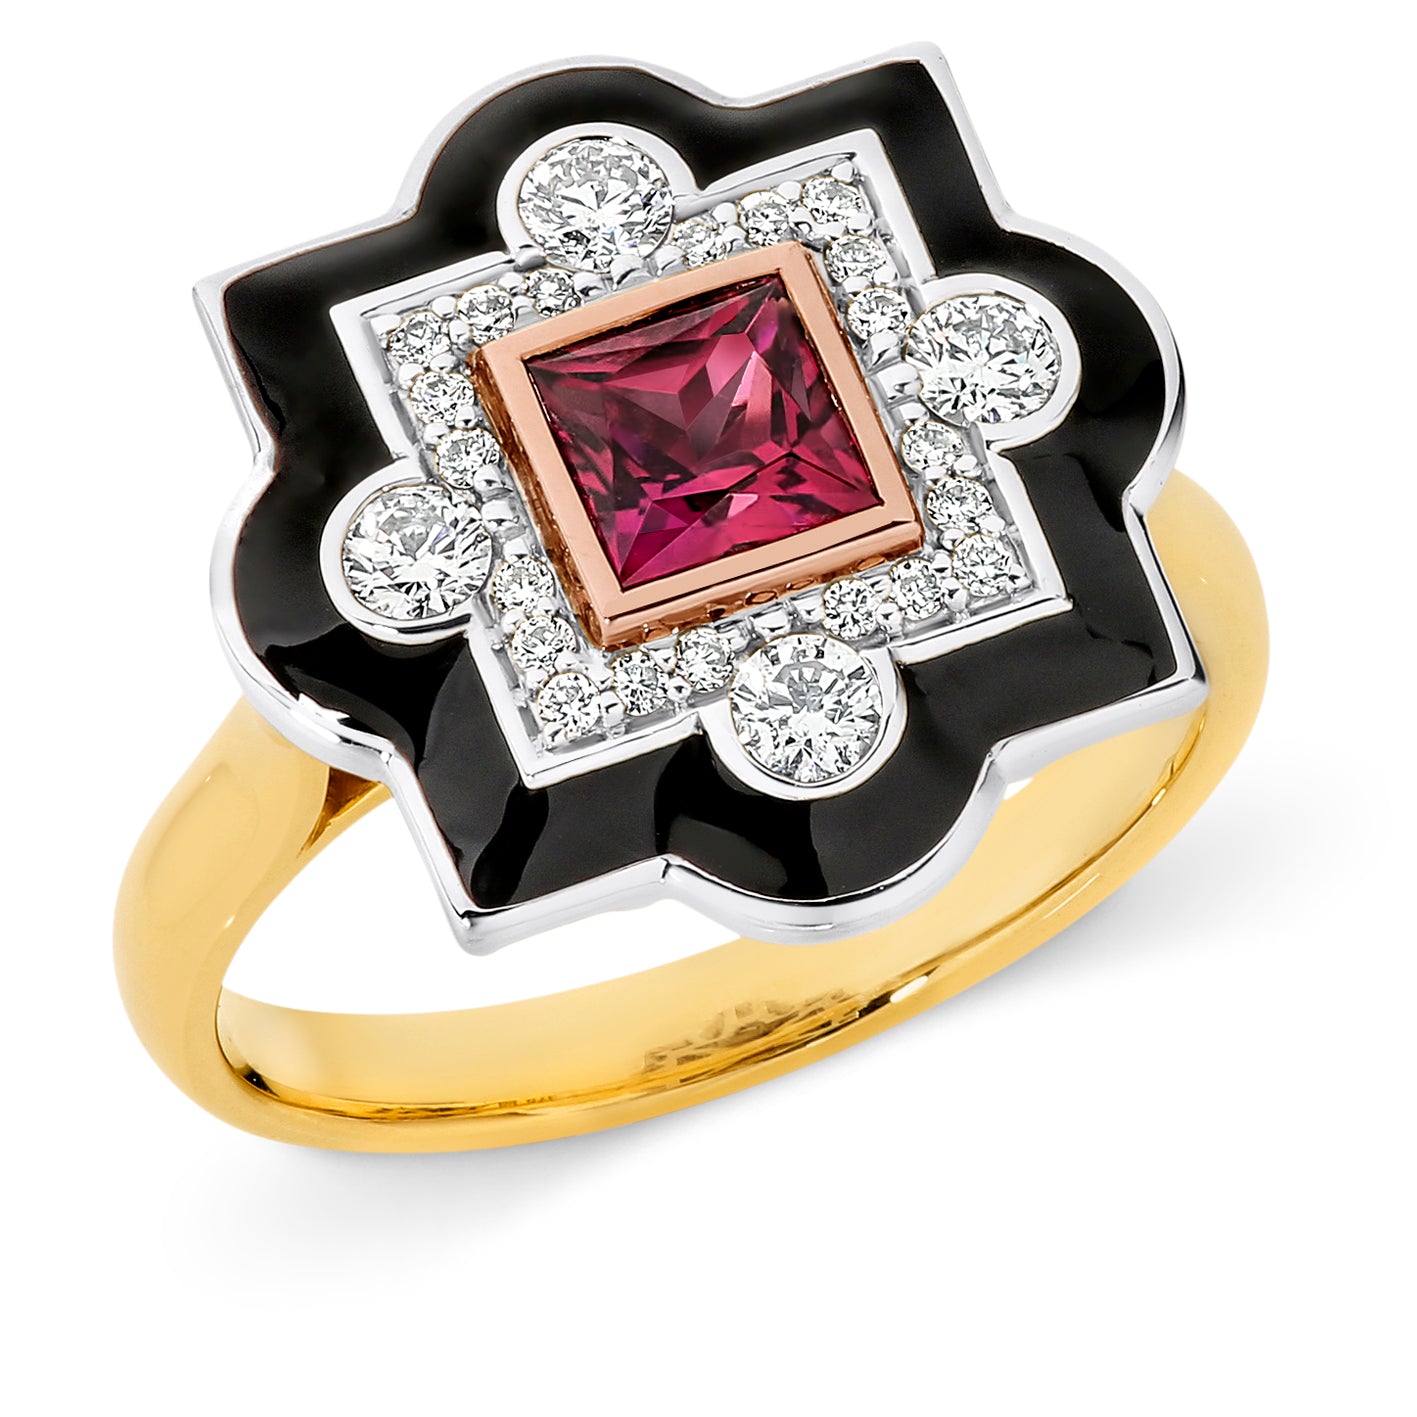 Jean' Pink Tourmaline & Diamond Ring in 9ct White, Yellow & Rose Gold